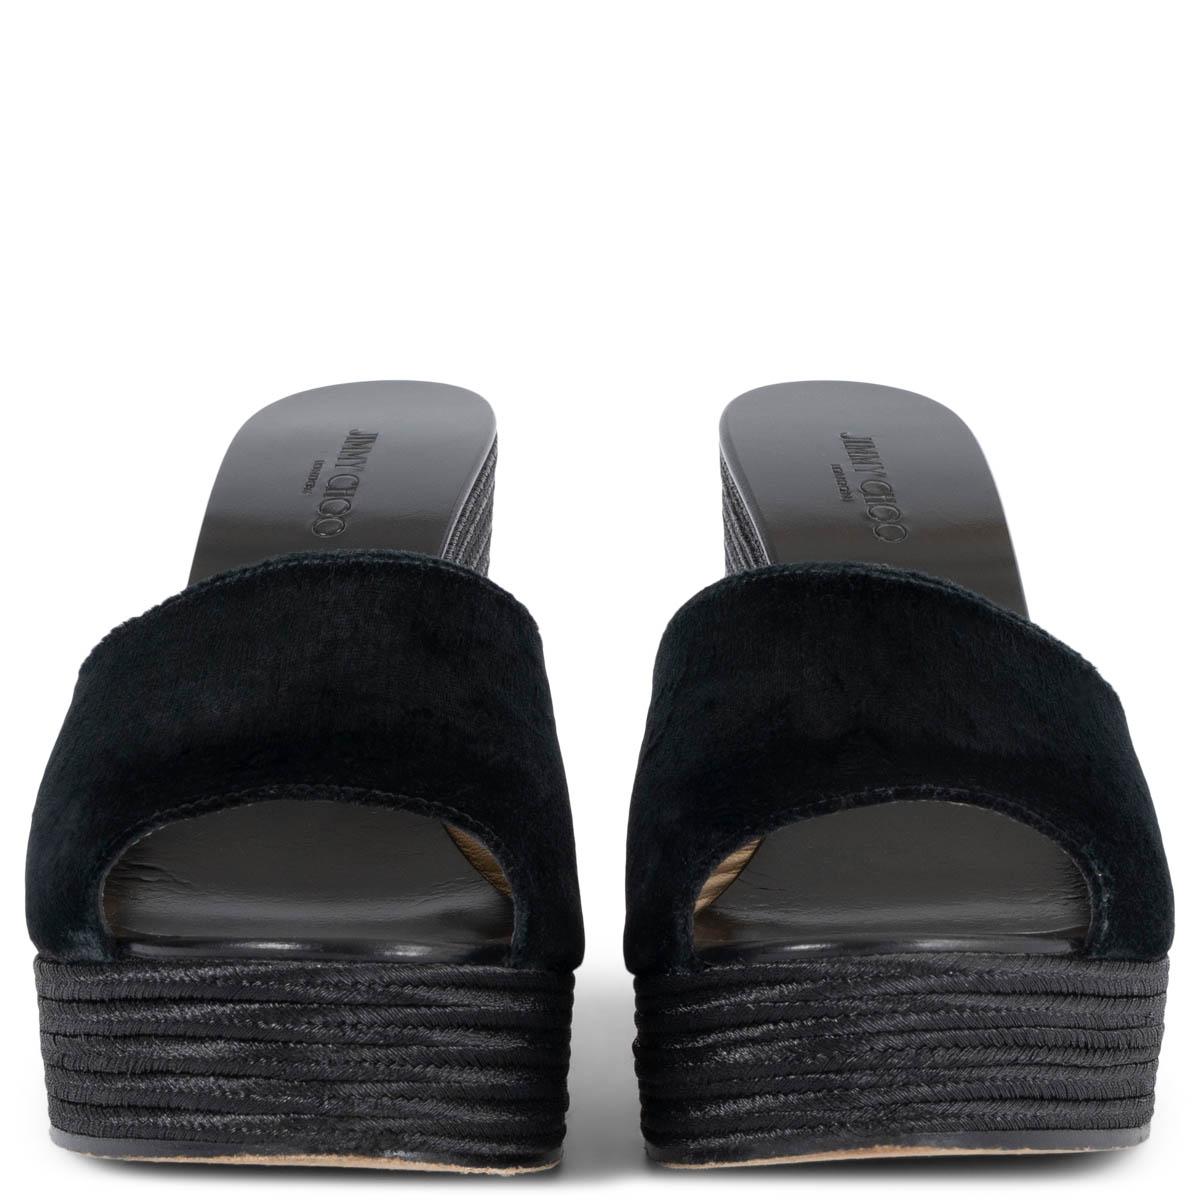 100% authentique Jimmy Choo DeeDee 125 sandales compensées en jute et velours noir métallisé. Ils ont été portés et sont en excellent état. Livré avec un sac à poussière.

Mesures
Taille imprimée	40.5 
Taille des chaussures	40.5
Semelle